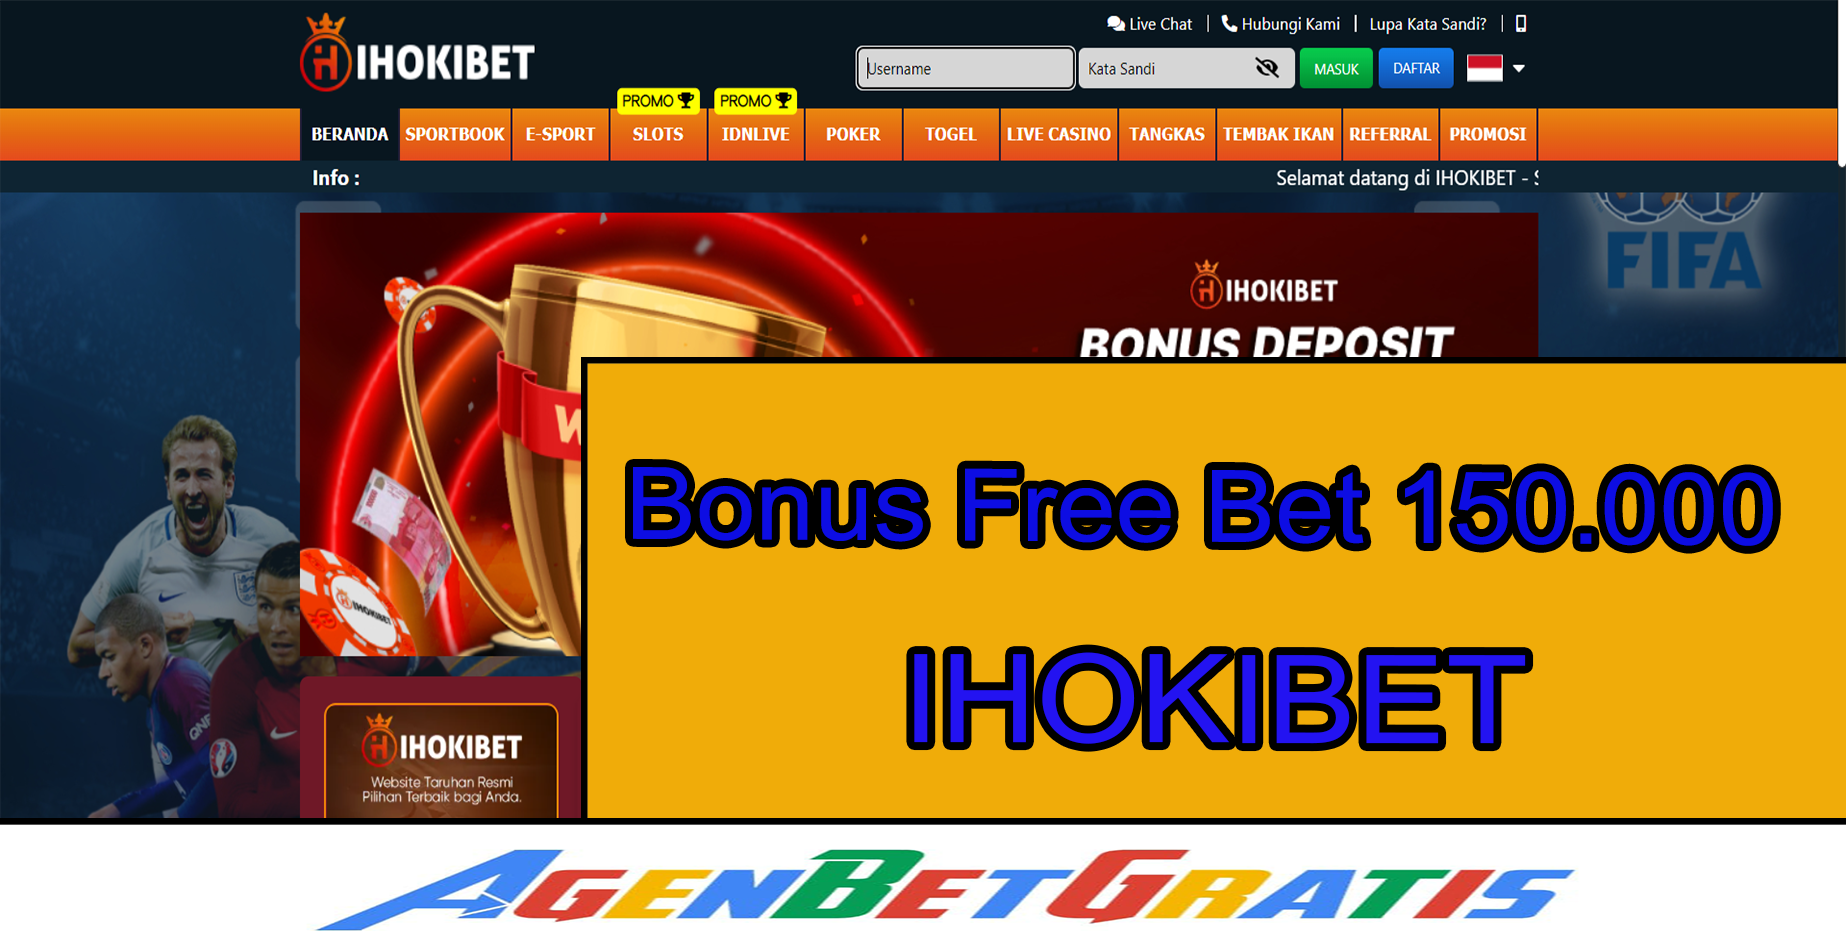 IHOKIBET - Bonus FreeBet 150.000